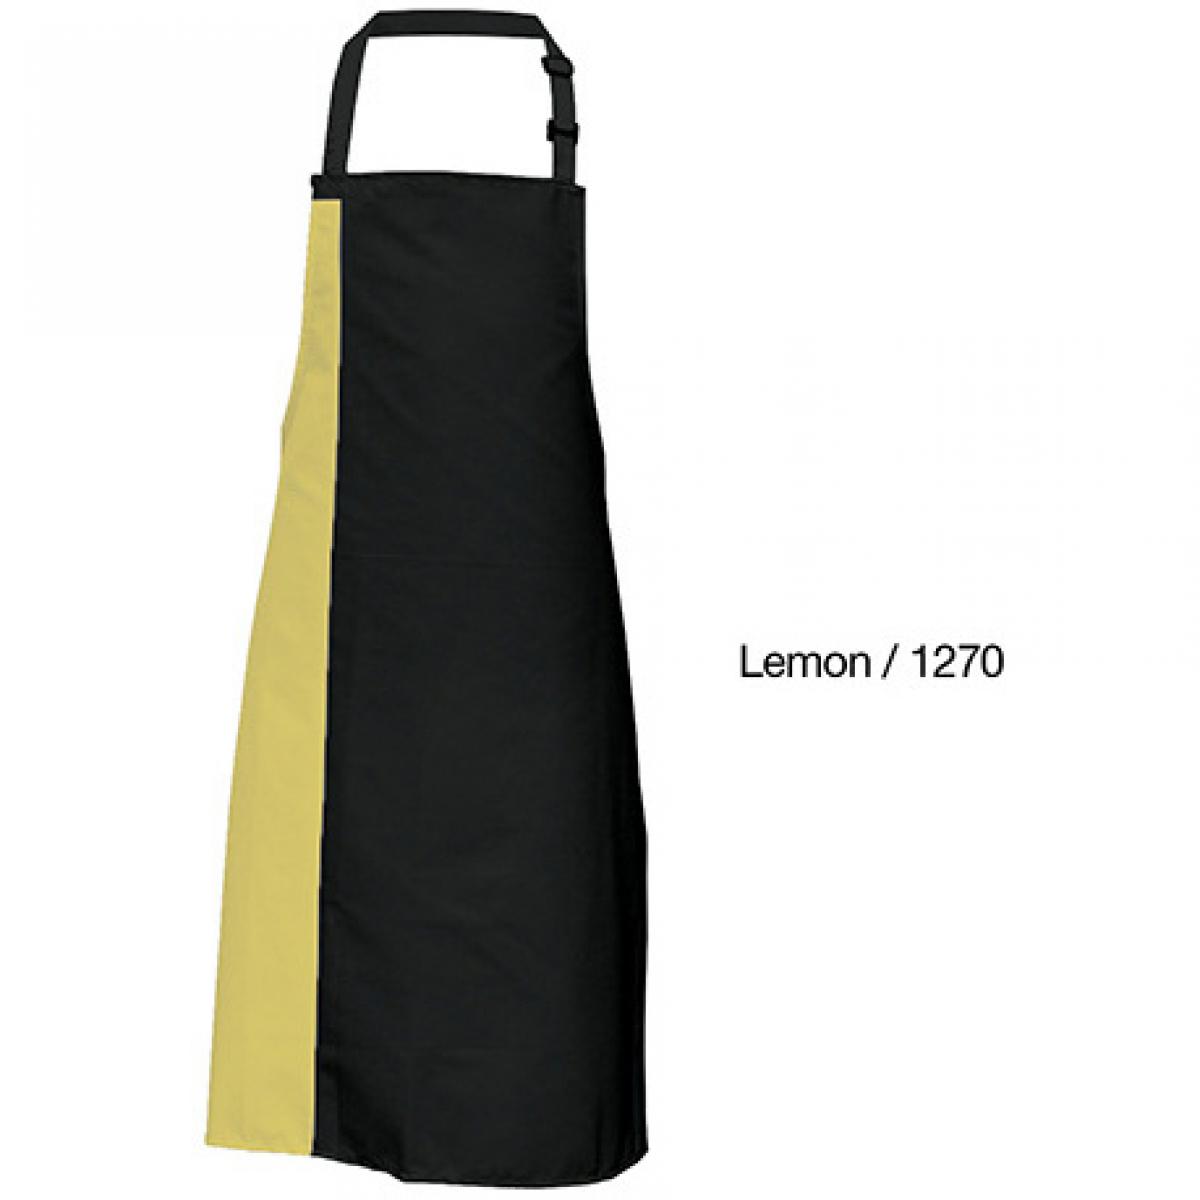 Hersteller: Link Kitchen Wear Herstellernummer: DS8572 Artikelbezeichnung: Duo Apron - 72 x 85 cm - Waschbar bis 60 °C Farbe: Black/Lemon (ca. Pantone 127)